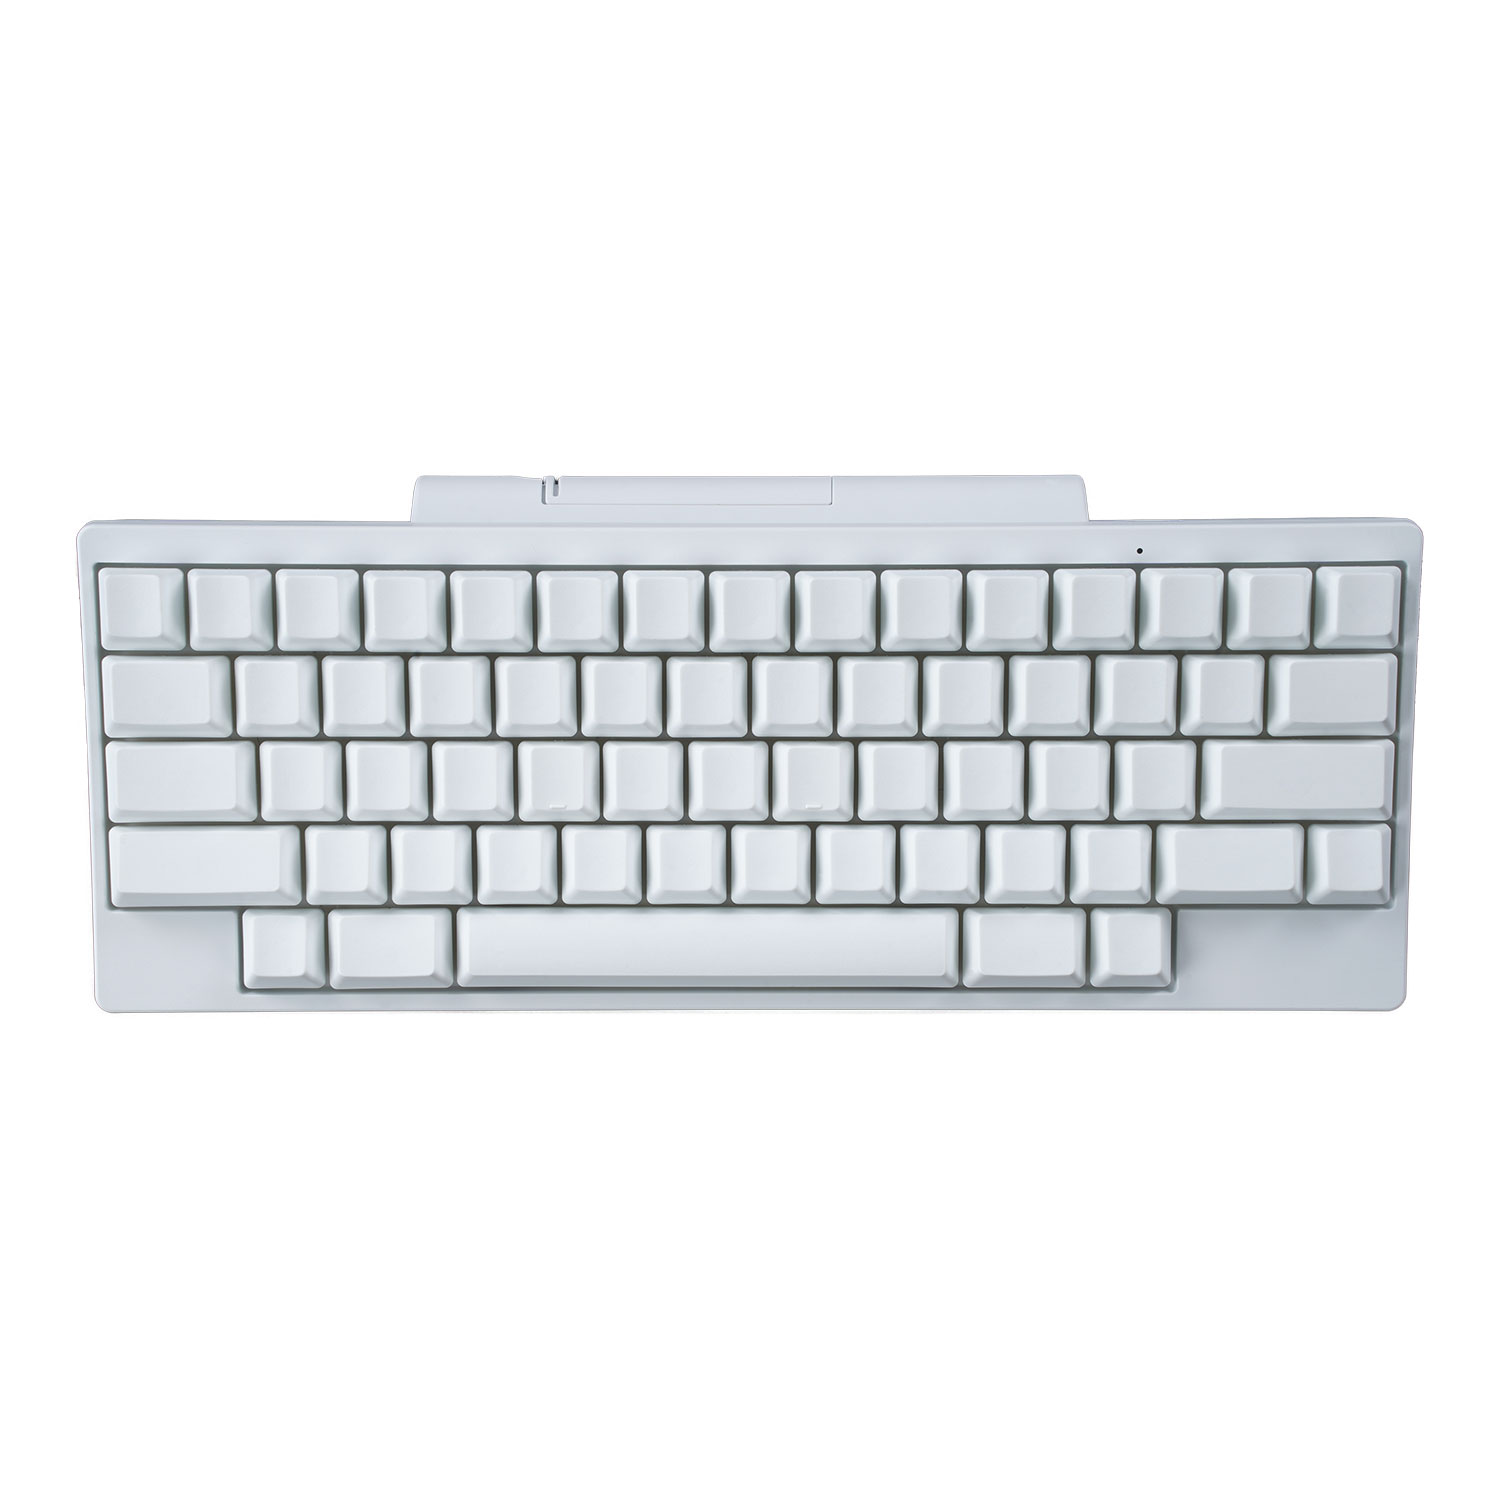 HHKB HYBRID Type-S Snow Keyboard Reinweiße mit leeren Tastenkappen